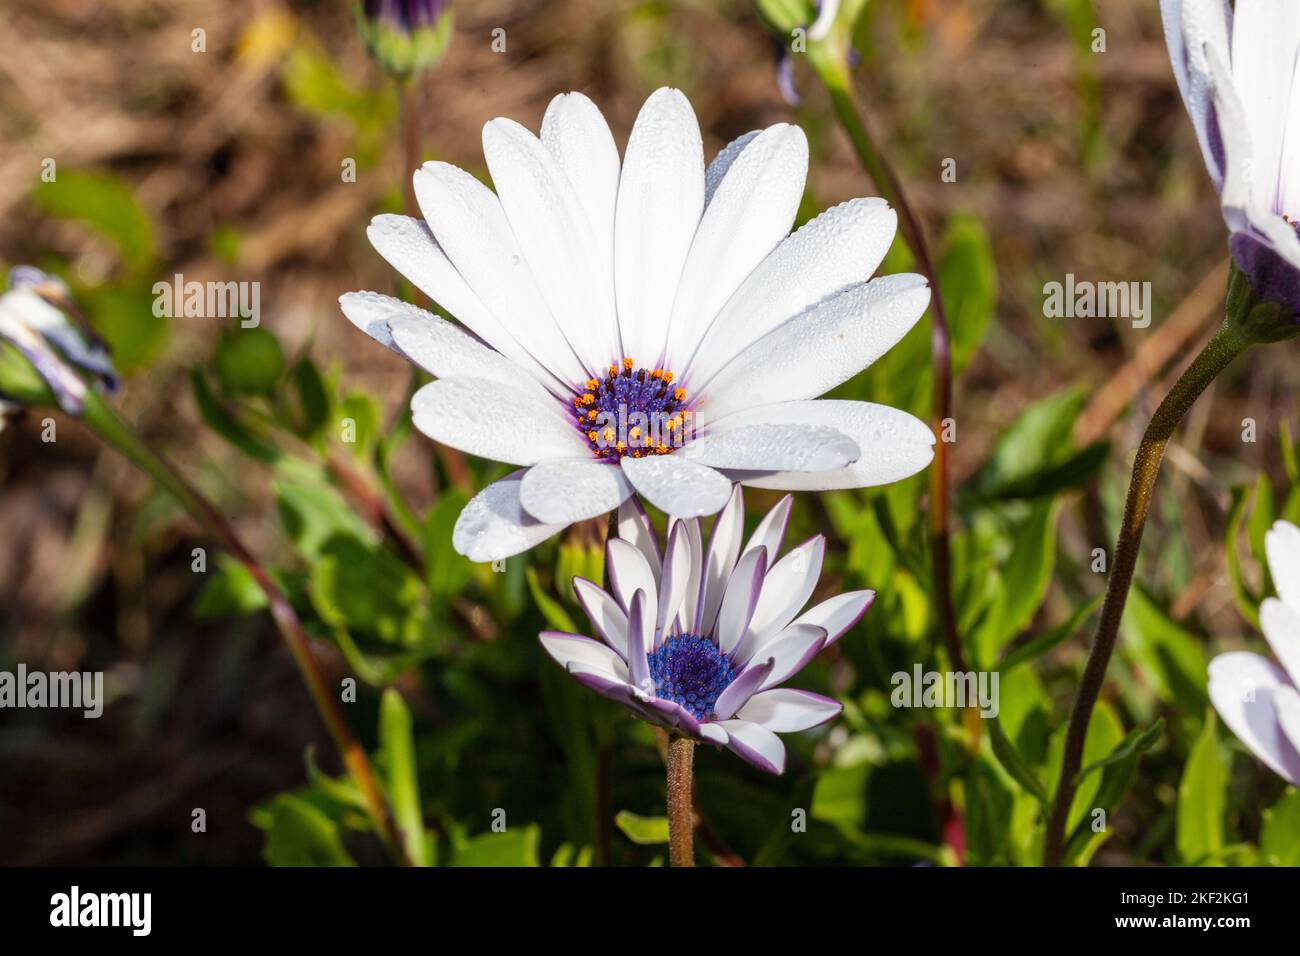 beautiful daisy flower in a field Stock Photo